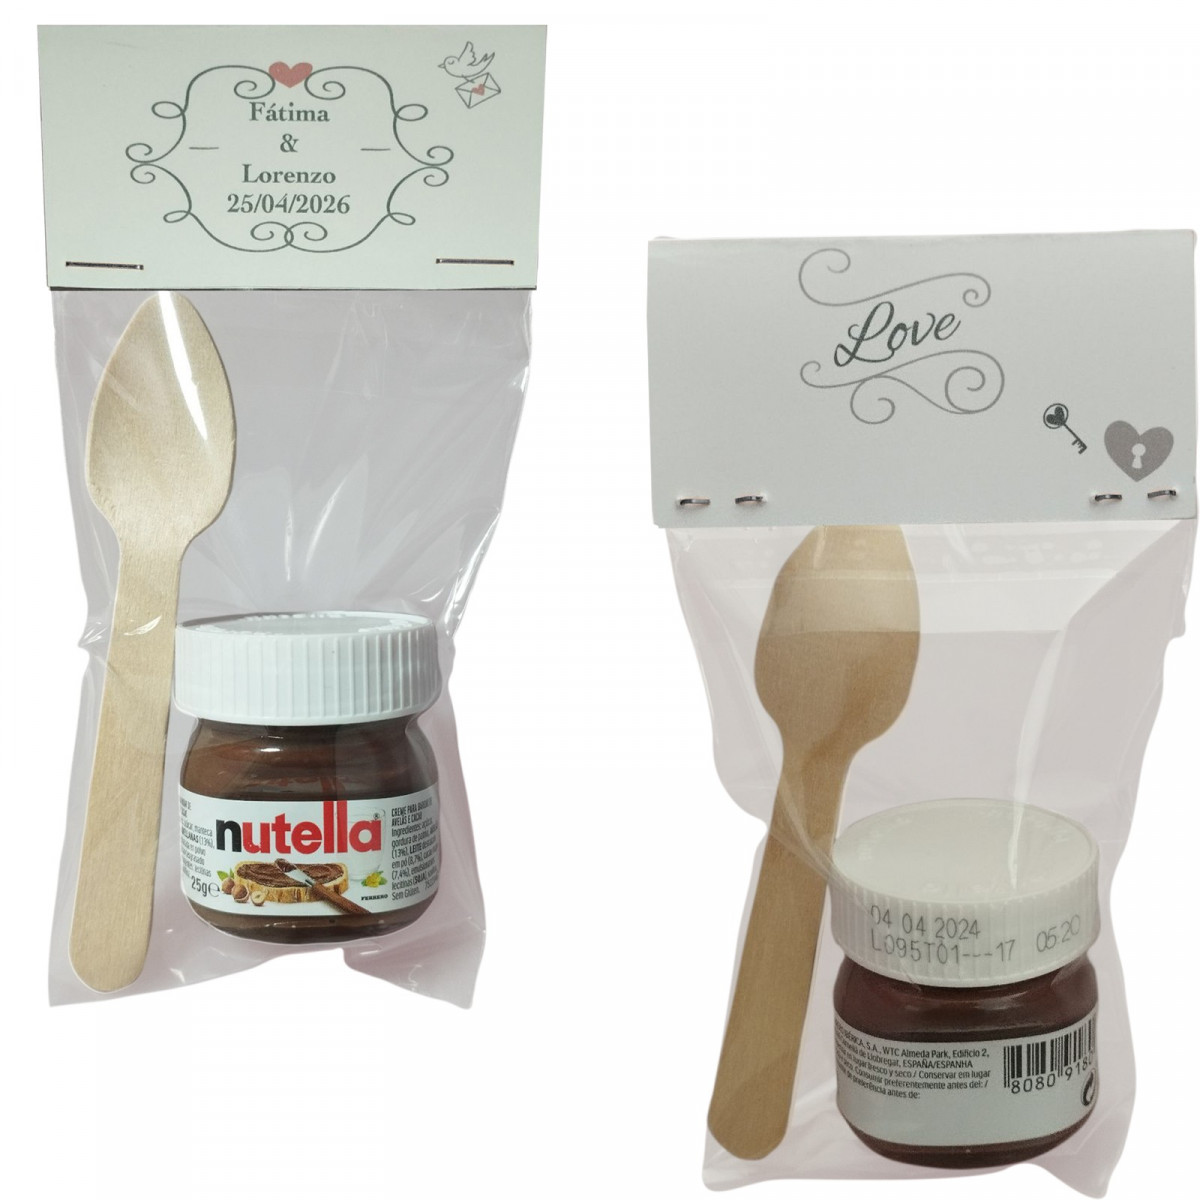 Nutella con cuchara presentada en bolsa transparente con cartón love personalizado